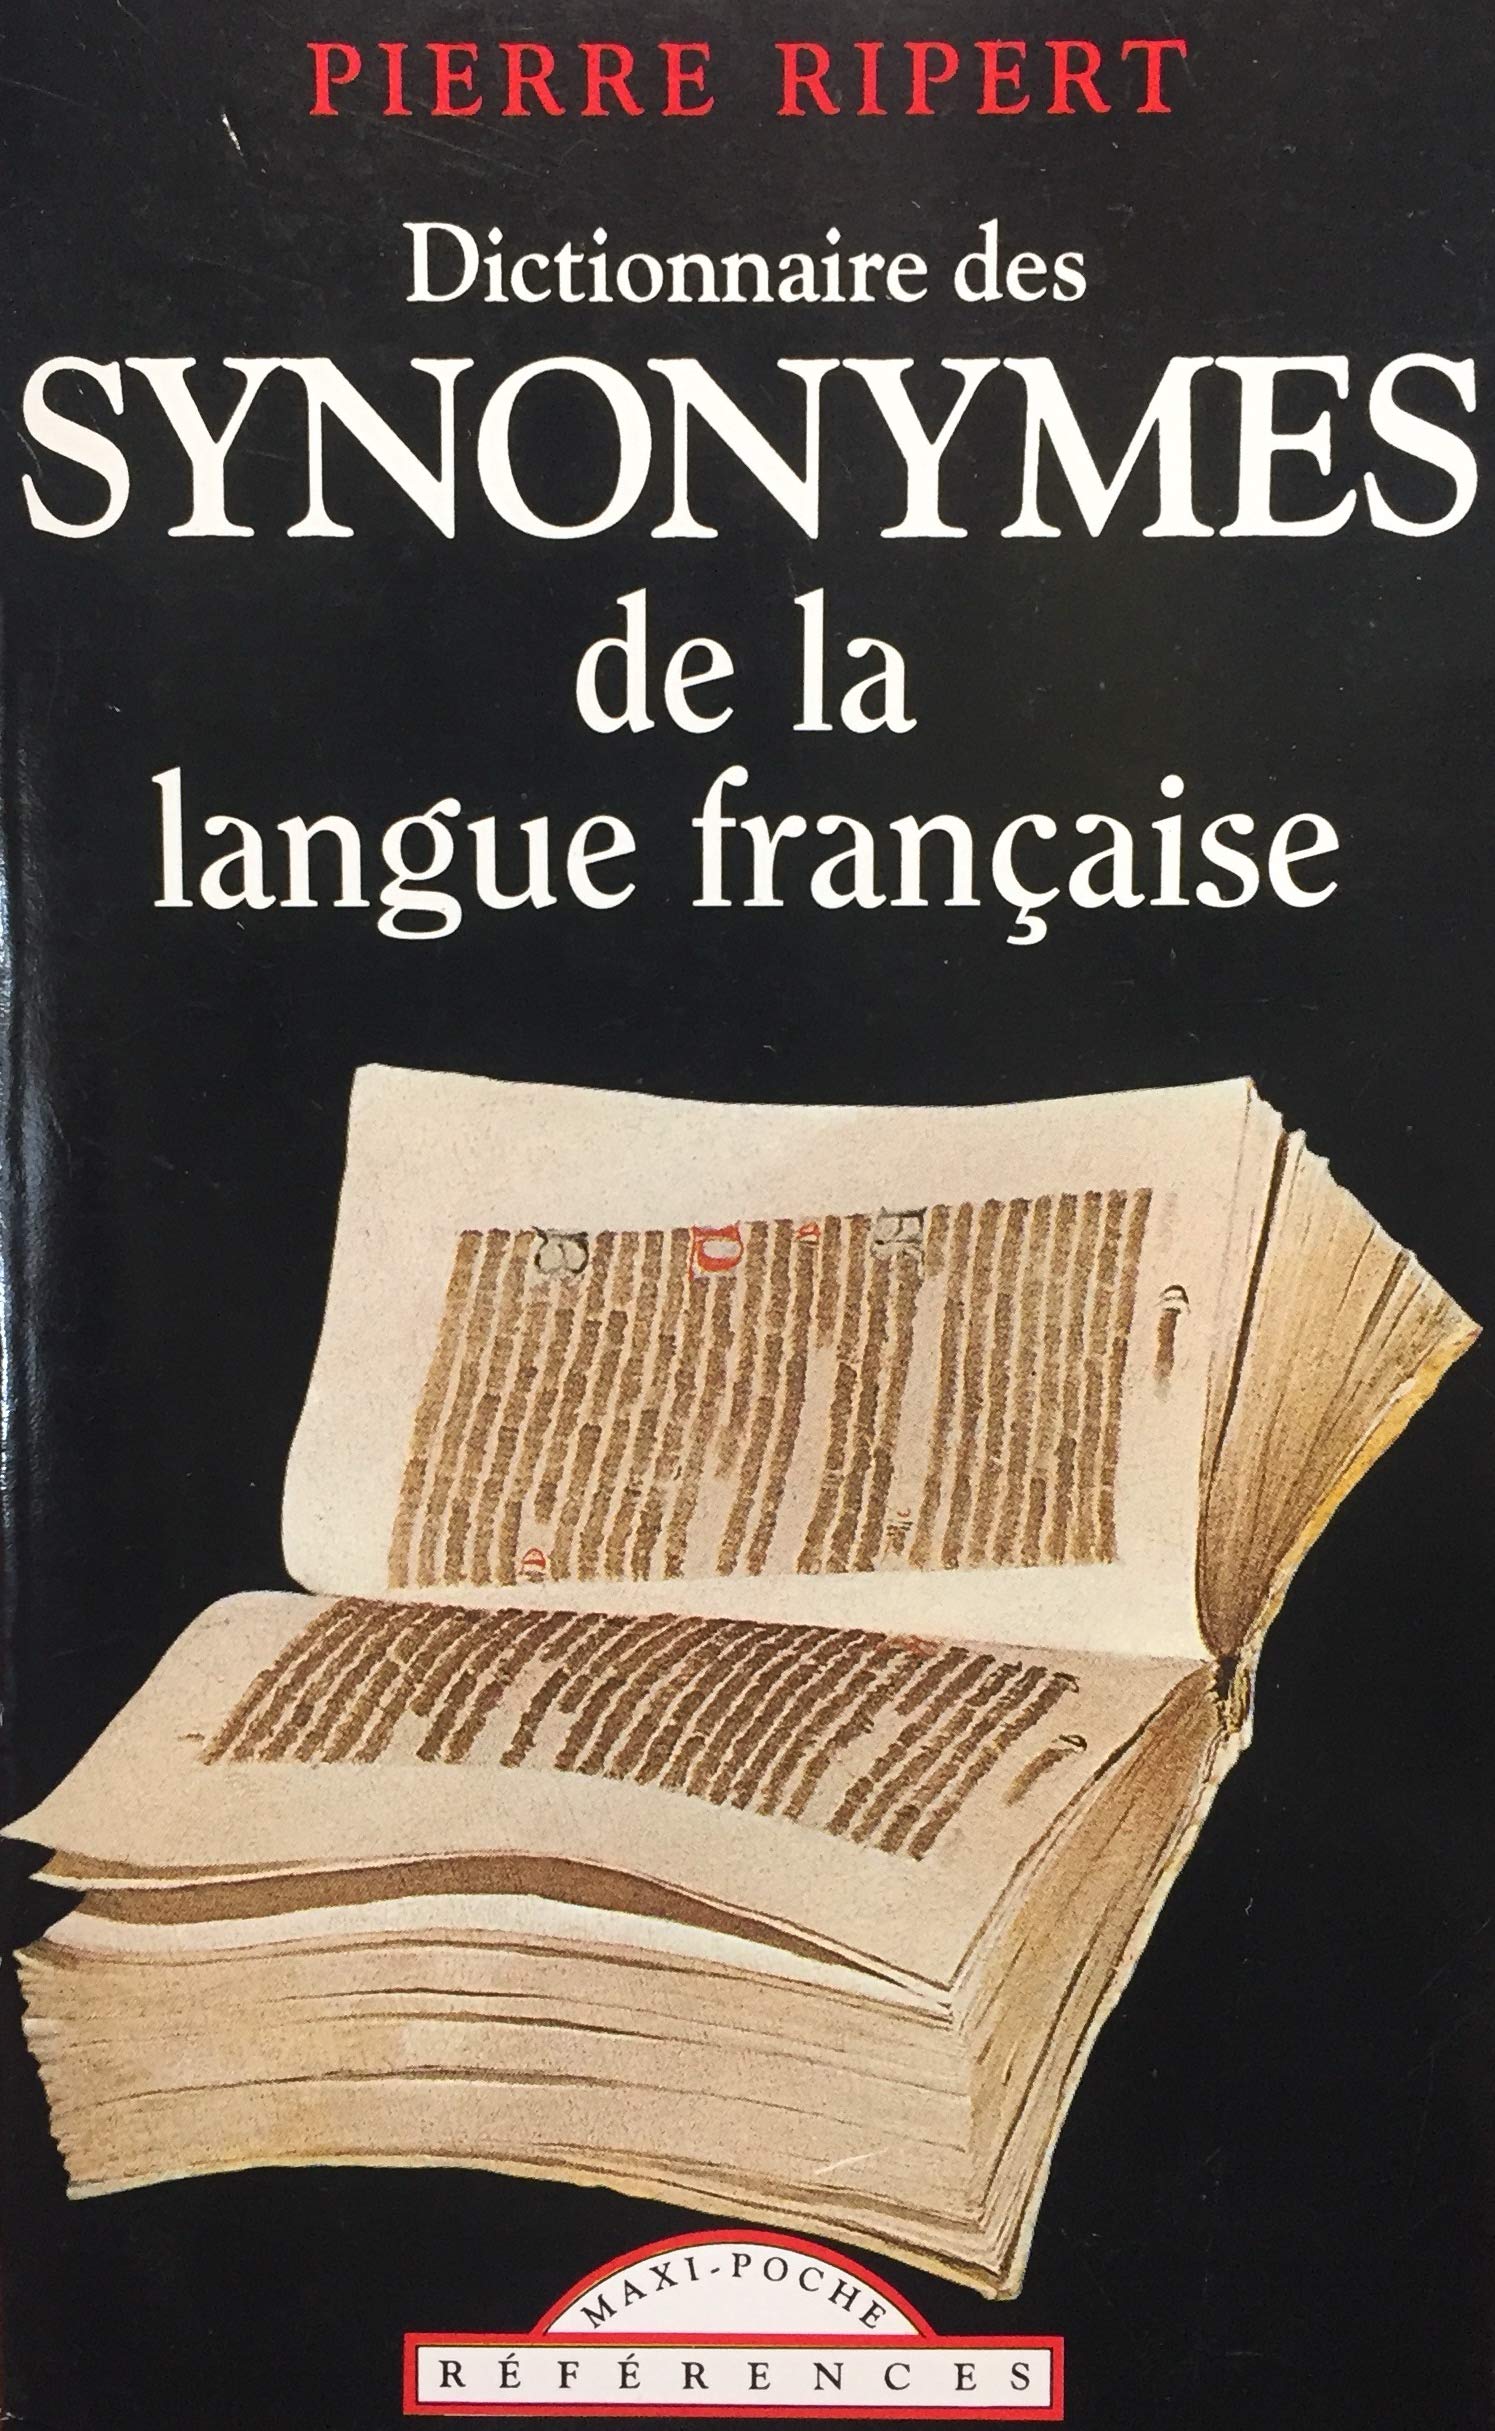 Livre ISBN 2877142000 Dictionnaire des synonymes de la langue française (Pierre Ripert)